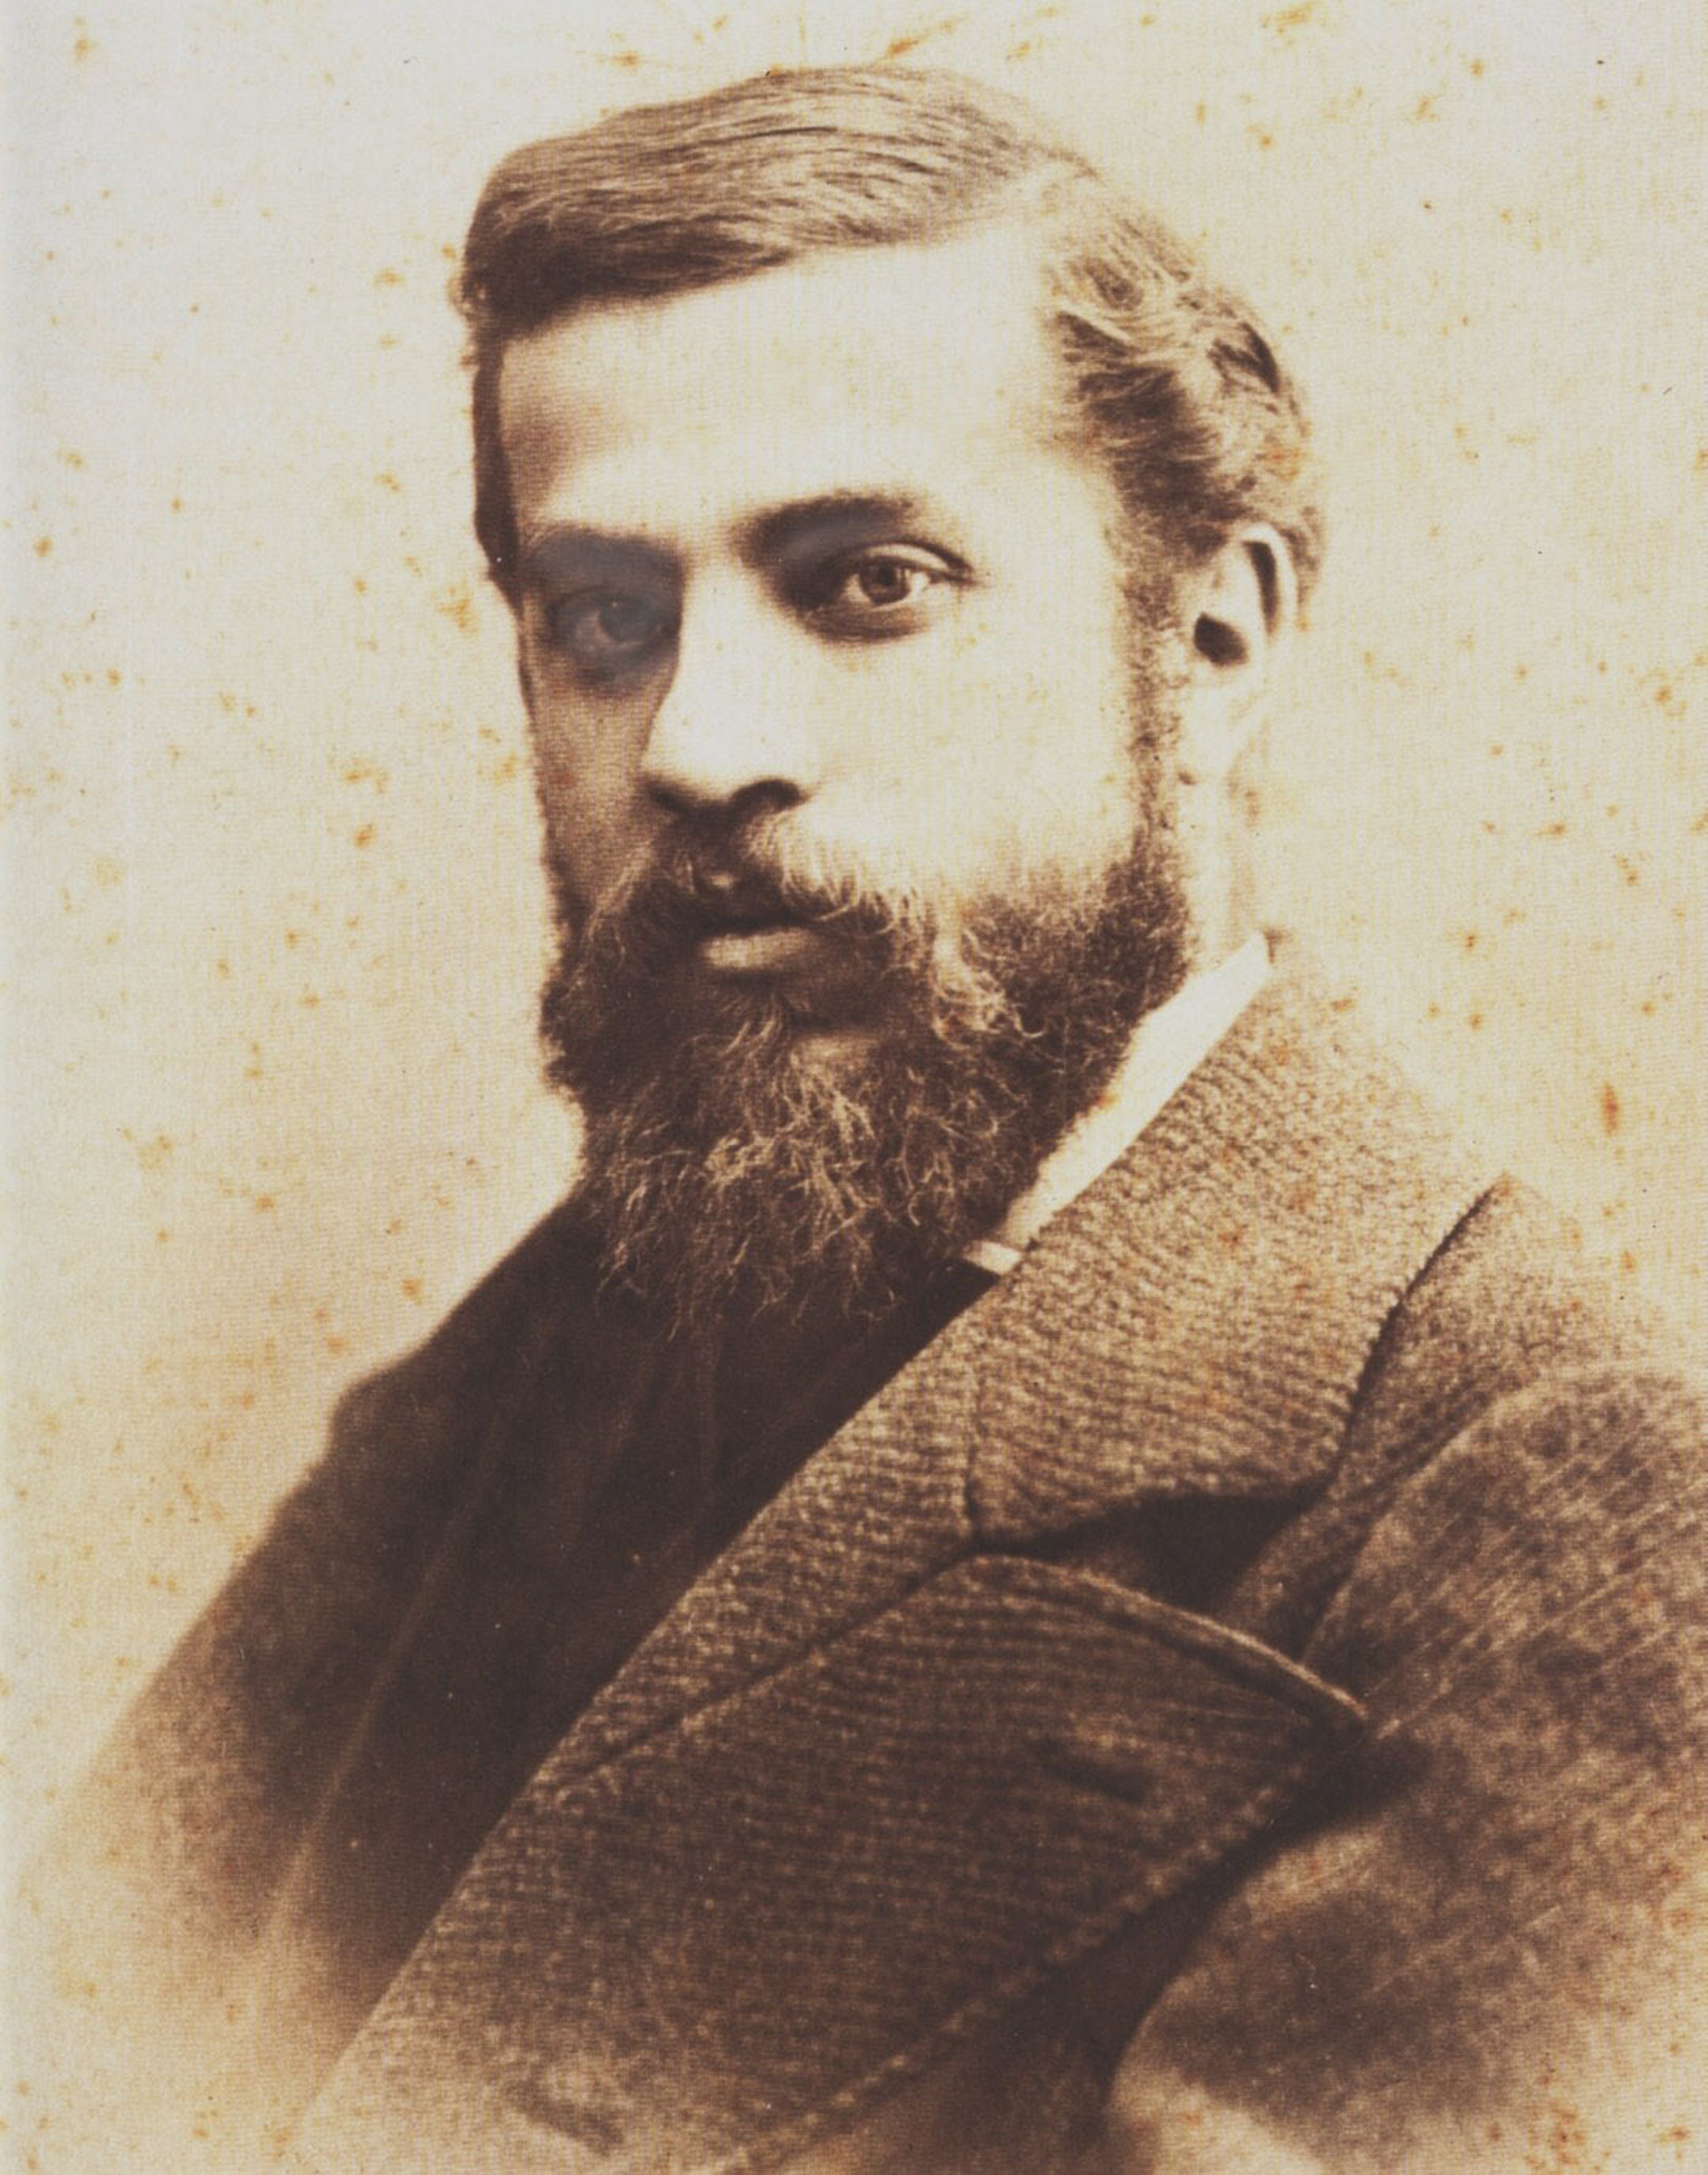 Retrato de Gaudí